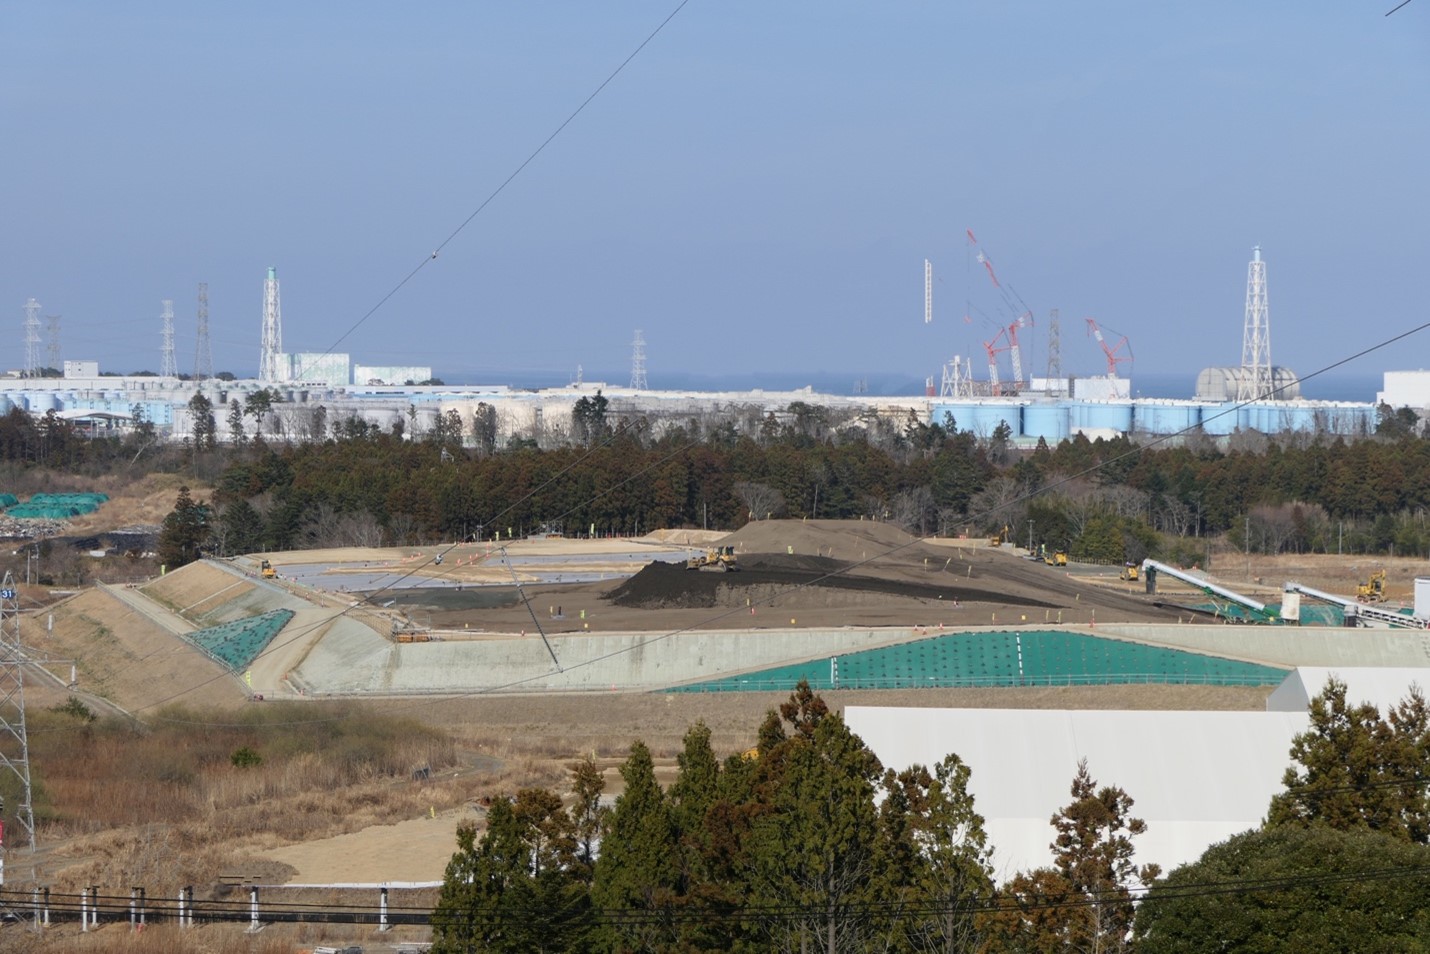 圖說：6支白色巨塔就是福島第一核電廠的6部機所在位置，已經被藍色和灰色的巨大核污水儲水槽包圍，核污水還不斷滲出，繼續污染廠外環境。旁邊的低階除污中間核廢料貯存場大規模開發，也會揚起受污染的塵土，再去污染除污的地區，就像裝模作樣要把炭洗白的小鬼，活了8百歲的彭祖也不信。 圖：方儉攝圖說：大興土木，不但耗費億兆元日幣的振興工程，同時也將污染擴散，形成「有『輻』同享」的局面。 圖：方儉攝圖說 : 3月中旬，福島已進入春耕期，農民已經整地準備插秧。未來這些農產品會賣到哪裡去？雖然這些農田號稱已經除污，換了新土，但是有2個問題： 1) 舊土去哪了？ 圖：方儉攝圖說 : 3月中旬，福島已進入春耕期，農民已經整地準備插秧。未來這些農產品會賣到哪裡去？雖然這些農田號稱已經除污，換了新土，但是有2個問題： 2) 週圍的林野輻射污染仍居高不下，這些農作物、食物可能出污泥而不染嗎？ 圖：方儉攝輻射是沒有最低安全限值的，國際上訂出輻射防護第一原則「正當性」，要利大於弊。因為再低量的輻射都有致癌可能，而且目前研究的多是體外曝露，變成食物吃下去，除了為了治病，必須做斷層顯影，要吃放射性的顯影劑外，沒有更好的、更正當的理由，在健康身理方面沒有科學證據吃了含放射性核種的食物會利大於弊。對日本食品完全不設防，在經濟、外交，或國防上有利大於弊的機會嗎？至少我很介意台灣豬肉銷日、CPTPP這兩個面子工程，開放了一年，有什麼進度、結果？圖說：大興土木，不但耗費億兆元日幣的振興工程，同時也將污染擴散，形成「有『輻』同享」的局面。 圖：方儉攝圖說 : 3月中旬，福島已進入春耕期，農民已經整地準備插秧。未來這些農產品會賣到哪裡去？雖然這些農田號稱已經除污，換了新土，但是有2個問題： 1) 舊土去哪了？ 圖：方儉攝圖說 : 3月中旬，福島已進入春耕期，農民已經整地準備插秧。未來這些農產品會賣到哪裡去？雖然這些農田號稱已經除污，換了新土，但是有2個問題： 2) 週圍的林野輻射污染仍居高不下，這些農作物、食物可能出污泥而不染嗎？ 圖：方儉攝輻射是沒有最低安全限值的，國際上訂出輻射防護第一原則「正當性」，要利大於弊。因為再低量的輻射都有致癌可能，而且目前研究的多是體外曝露，變成食物吃下去，除了為了治病，必須做斷層顯影，要吃放射性的顯影劑外，沒有更好的、更正當的理由，在健康身理方面沒有科學證據吃了含放射性核種的食物會利大於弊。對日本食品完全不設防，在經濟、外交，或國防上有利大於弊的機會嗎？至少我很介意台灣豬肉銷日、CPTPP這兩個面子工程，開放了一年，有什麼進度、結果？圖說 : 3月中旬，福島已進入春耕期，農民已經整地準備插秧。未來這些農產品會賣到哪裡去？雖然這些農田號稱已經除污，換了新土，但是有2個問題： 1) 舊土去哪了？ 圖：方儉攝圖說 : 3月中旬，福島已進入春耕期，農民已經整地準備插秧。未來這些農產品會賣到哪裡去？雖然這些農田號稱已經除污，換了新土，但是有2個問題： 2) 週圍的林野輻射污染仍居高不下，這些農作物、食物可能出污泥而不染嗎？ 圖：方儉攝輻射是沒有最低安全限值的，國際上訂出輻射防護第一原則「正當性」，要利大於弊。因為再低量的輻射都有致癌可能，而且目前研究的多是體外曝露，變成食物吃下去，除了為了治病，必須做斷層顯影，要吃放射性的顯影劑外，沒有更好的、更正當的理由，在健康身理方面沒有科學證據吃了含放射性核種的食物會利大於弊。對日本食品完全不設防，在經濟、外交，或國防上有利大於弊的機會嗎？至少我很介意台灣豬肉銷日、CPTPP這兩個面子工程，開放了一年，有什麼進度、結果？圖說 : 3月中旬，福島已進入春耕期，農民已經整地準備插秧。未來這些農產品會賣到哪裡去？雖然這些農田號稱已經除污，換了新土，但是有2個問題： 2) 週圍的林野輻射污染仍居高不下，這些農作物、食物可能出污泥而不染嗎？ 圖：方儉攝輻射是沒有最低安全限值的，國際上訂出輻射防護第一原則「正當性」，要利大於弊。因為再低量的輻射都有致癌可能，而且目前研究的多是體外曝露，變成食物吃下去，除了為了治病，必須做斷層顯影，要吃放射性的顯影劑外，沒有更好的、更正當的理由，在健康身理方面沒有科學證據吃了含放射性核種的食物會利大於弊。對日本食品完全不設防，在經濟、外交，或國防上有利大於弊的機會嗎？至少我很介意台灣豬肉銷日、CPTPP這兩個面子工程，開放了一年，有什麼進度、結果？